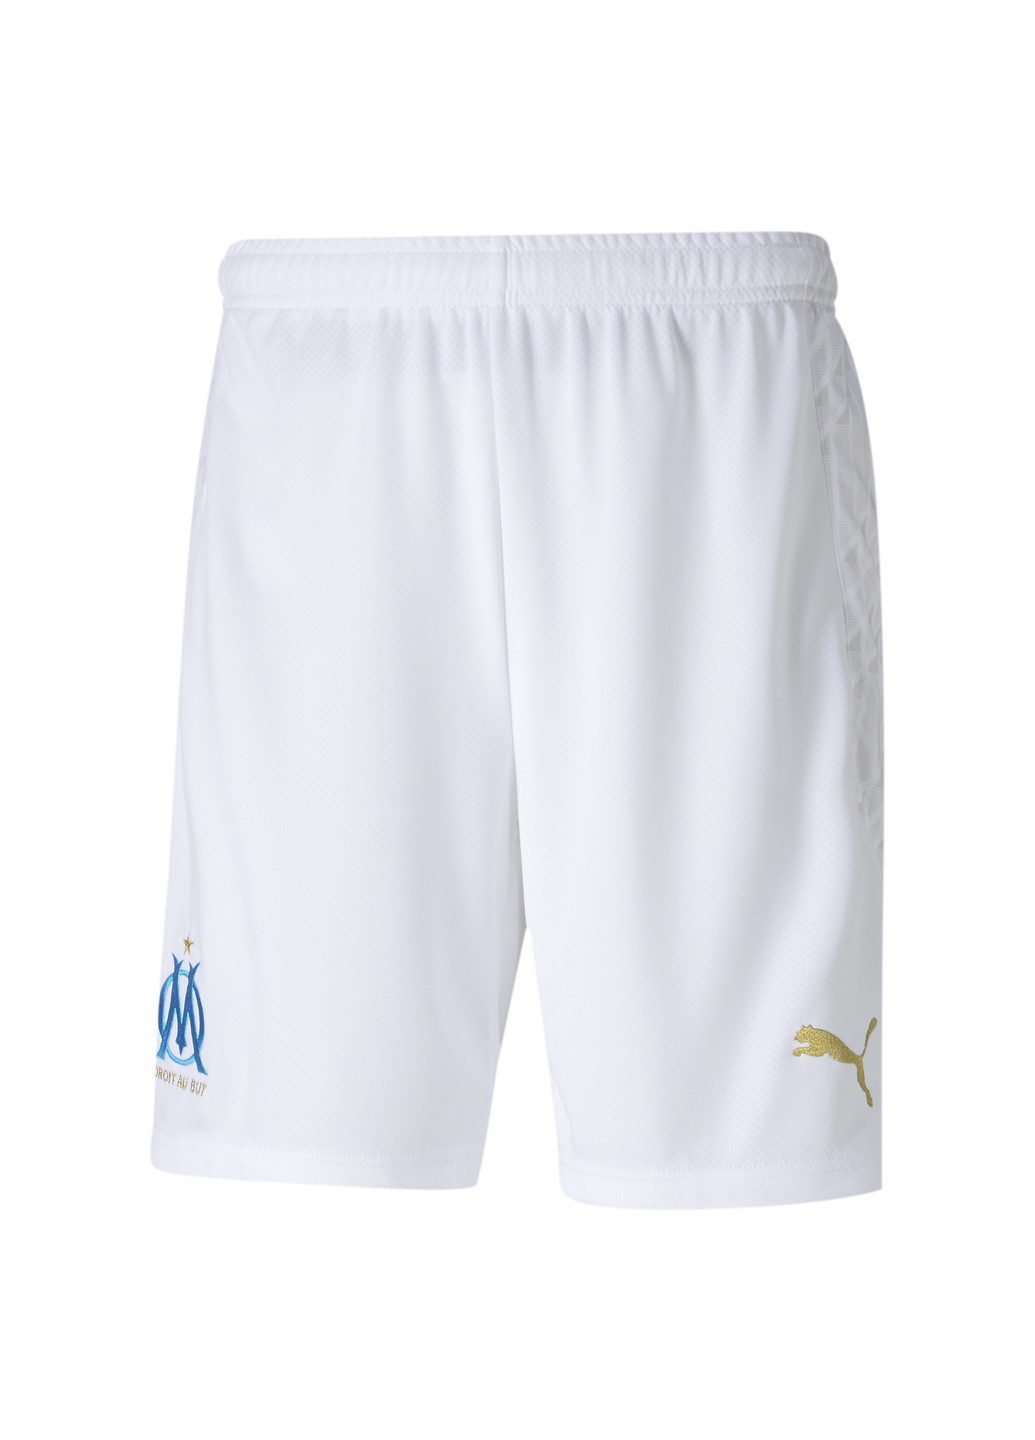 Шорты OM Shorts Replica Puma однотонные белые спортивные полиэстер